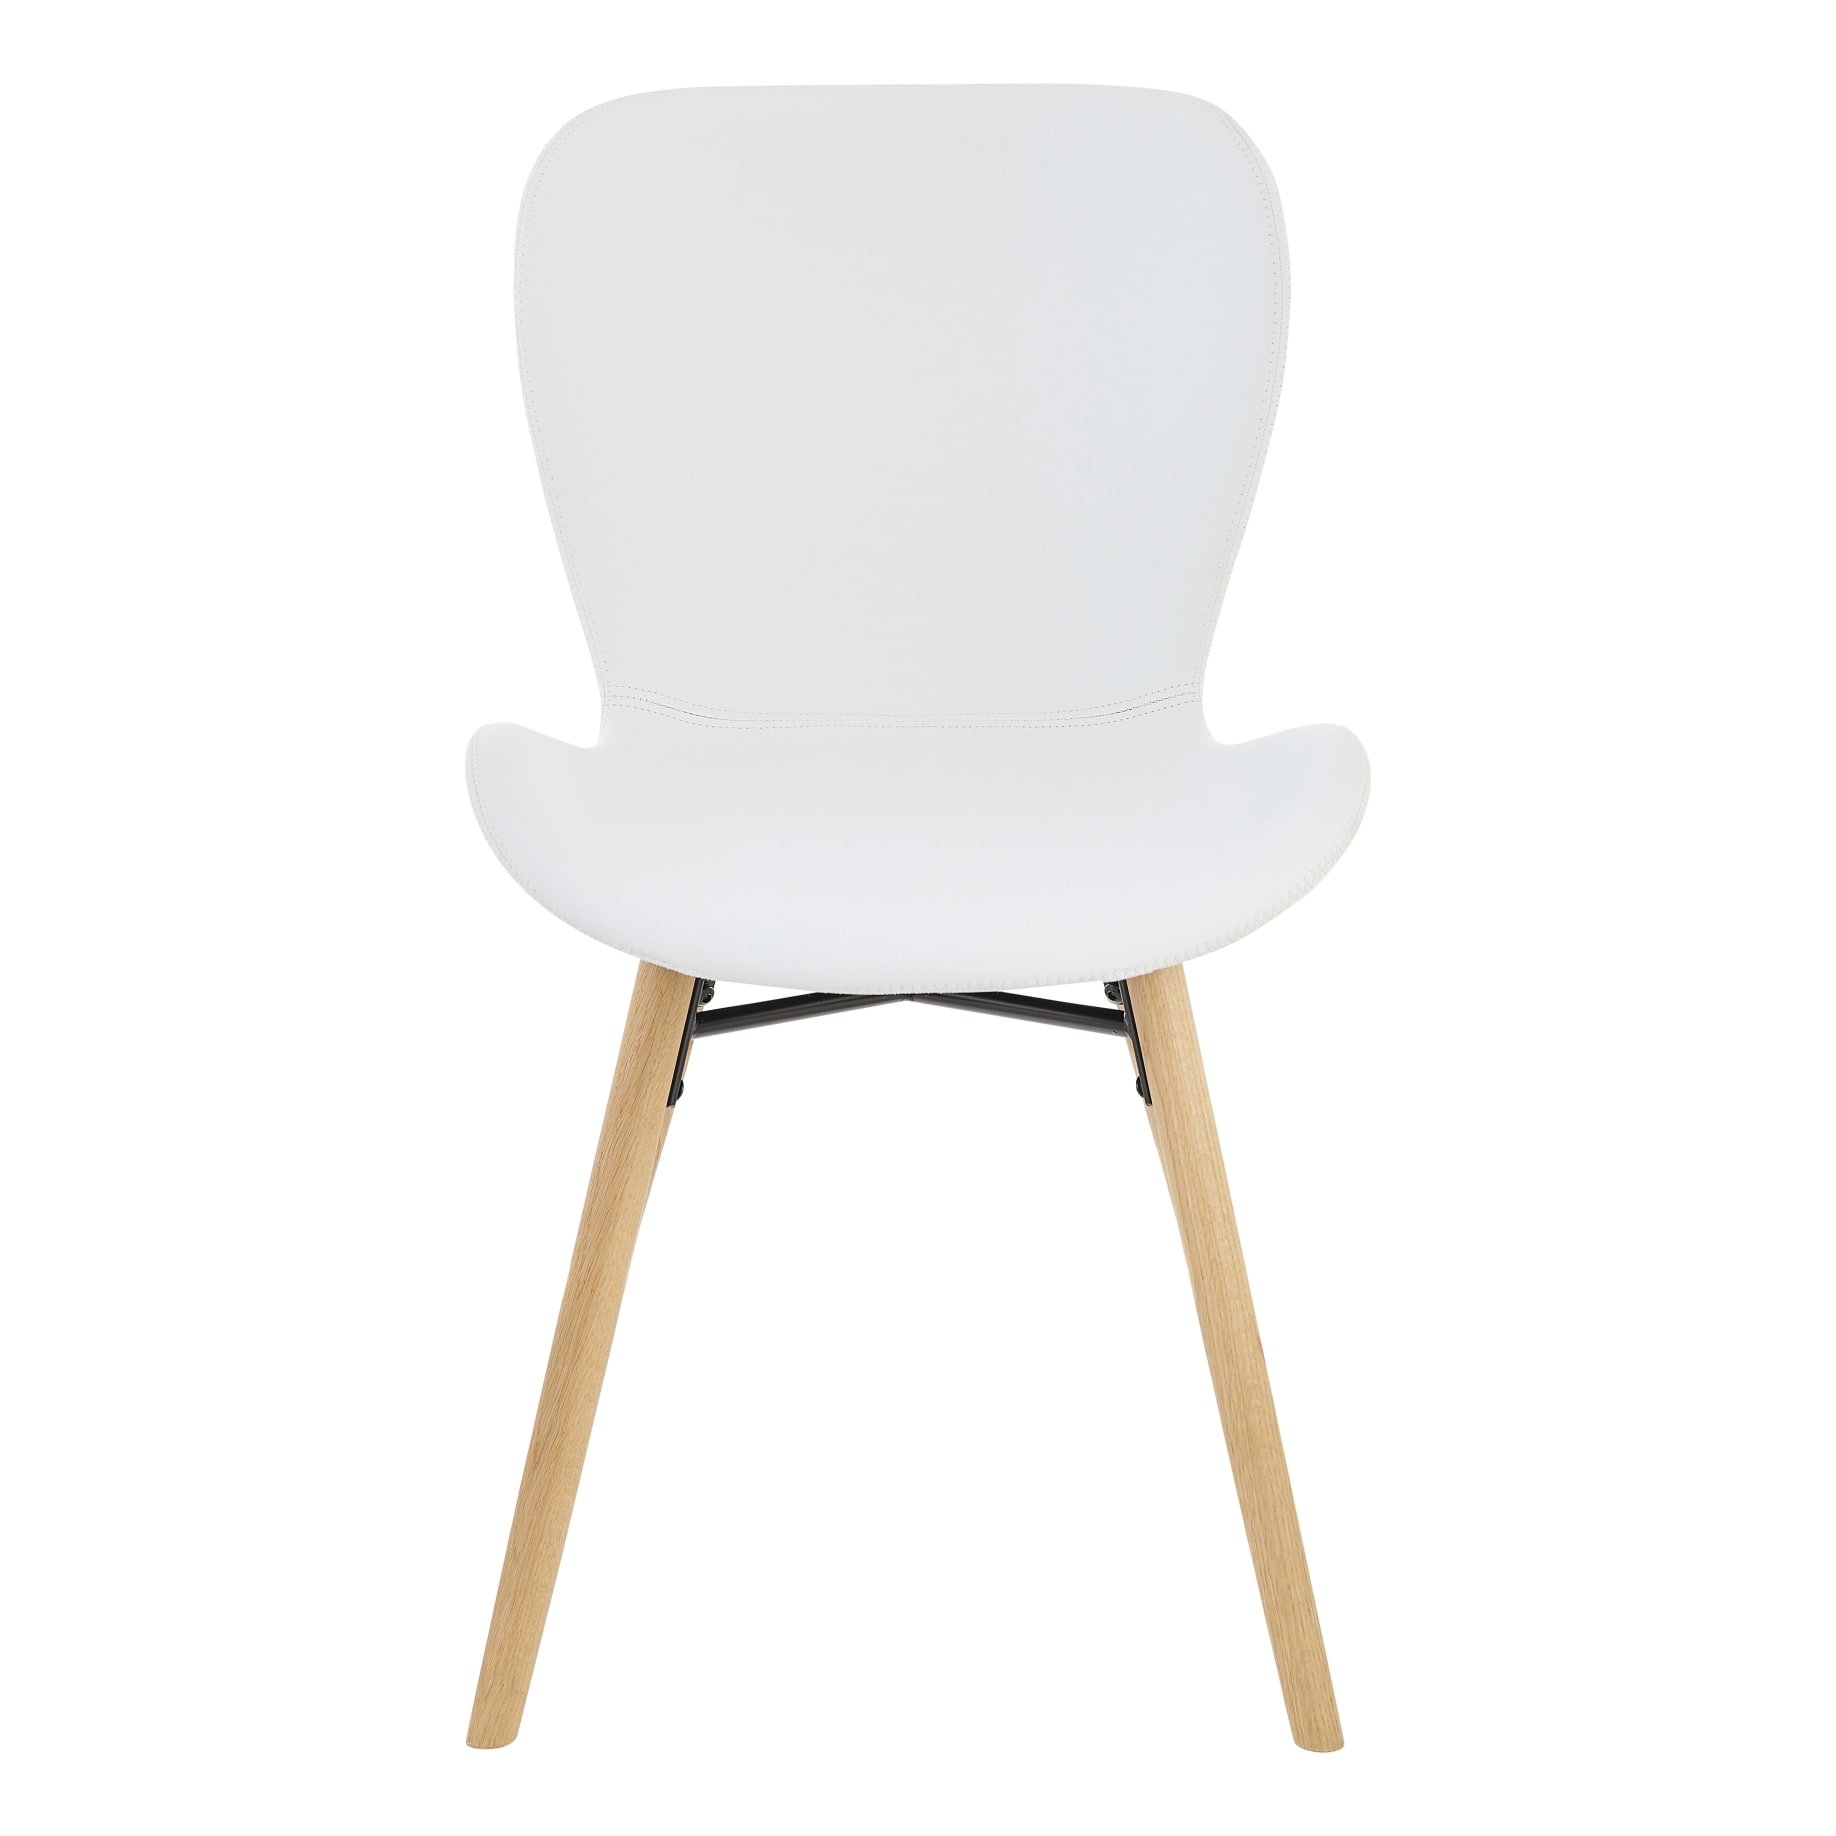 Batilda Dining Chair in White PU / Oak Leg